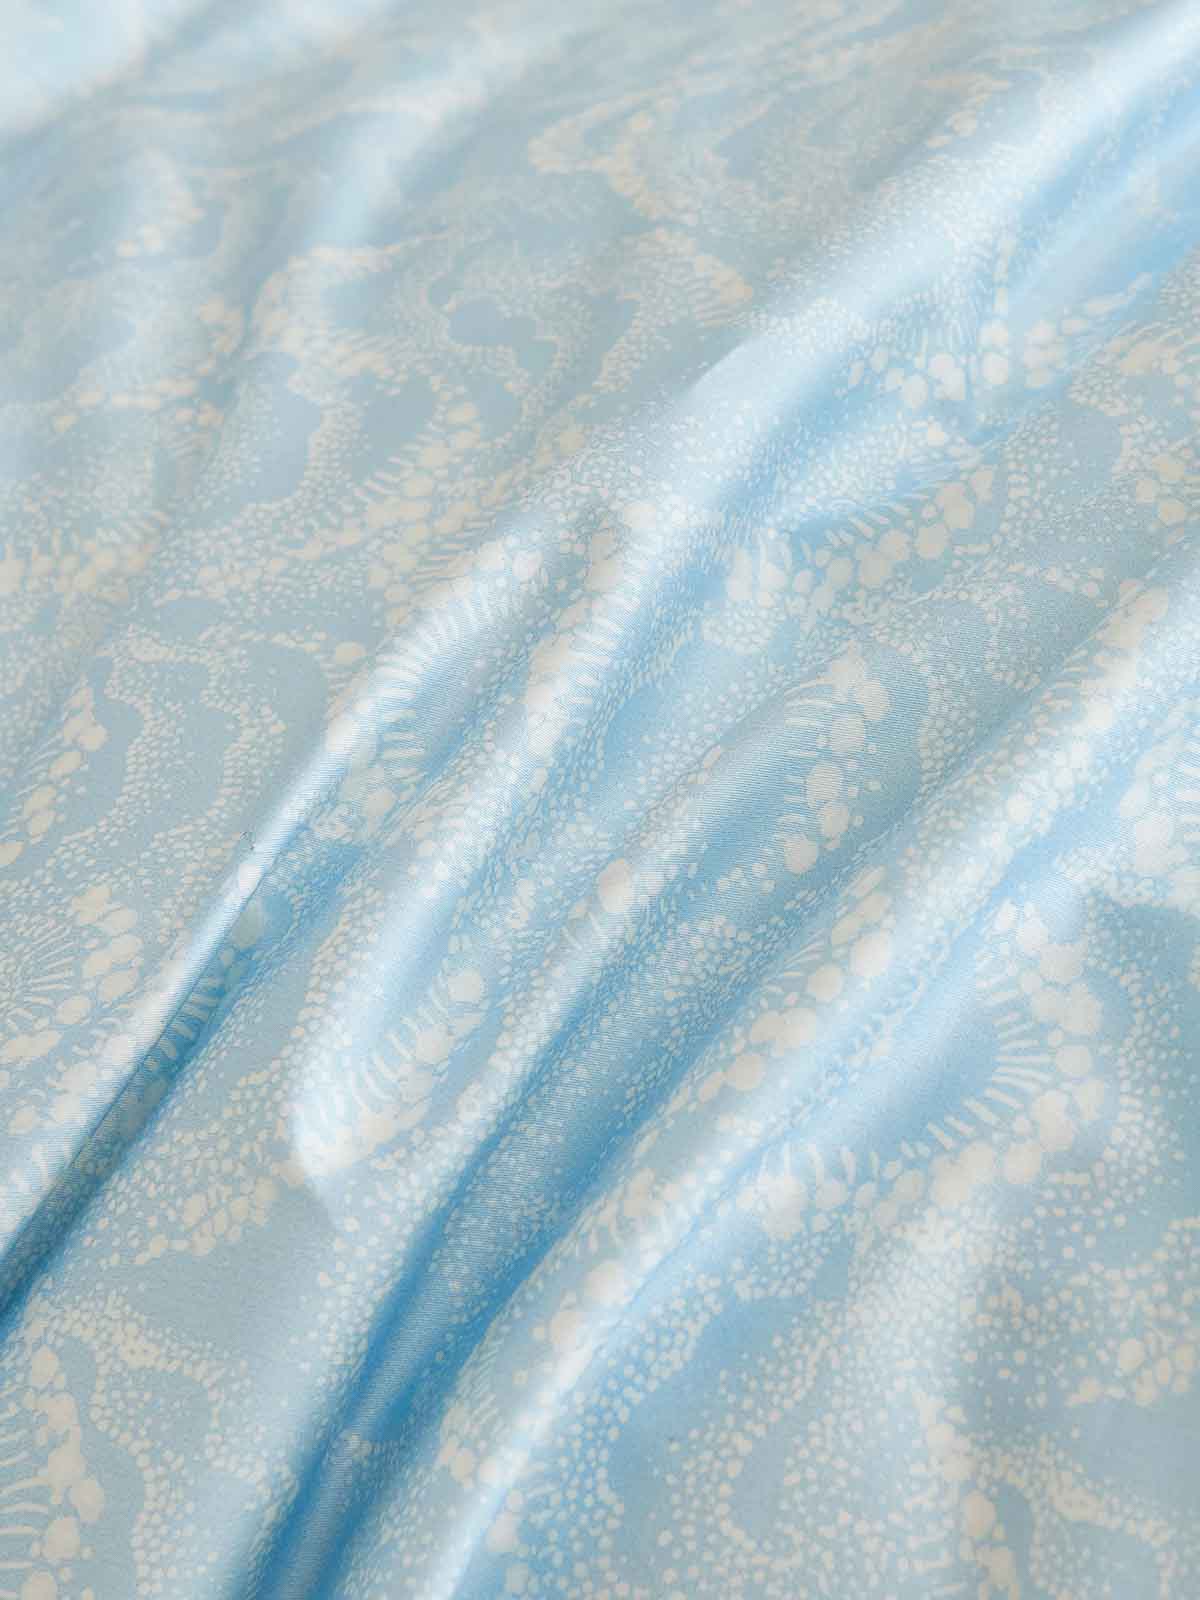 Raindrop Blue Premium Cotton Duvet Cover